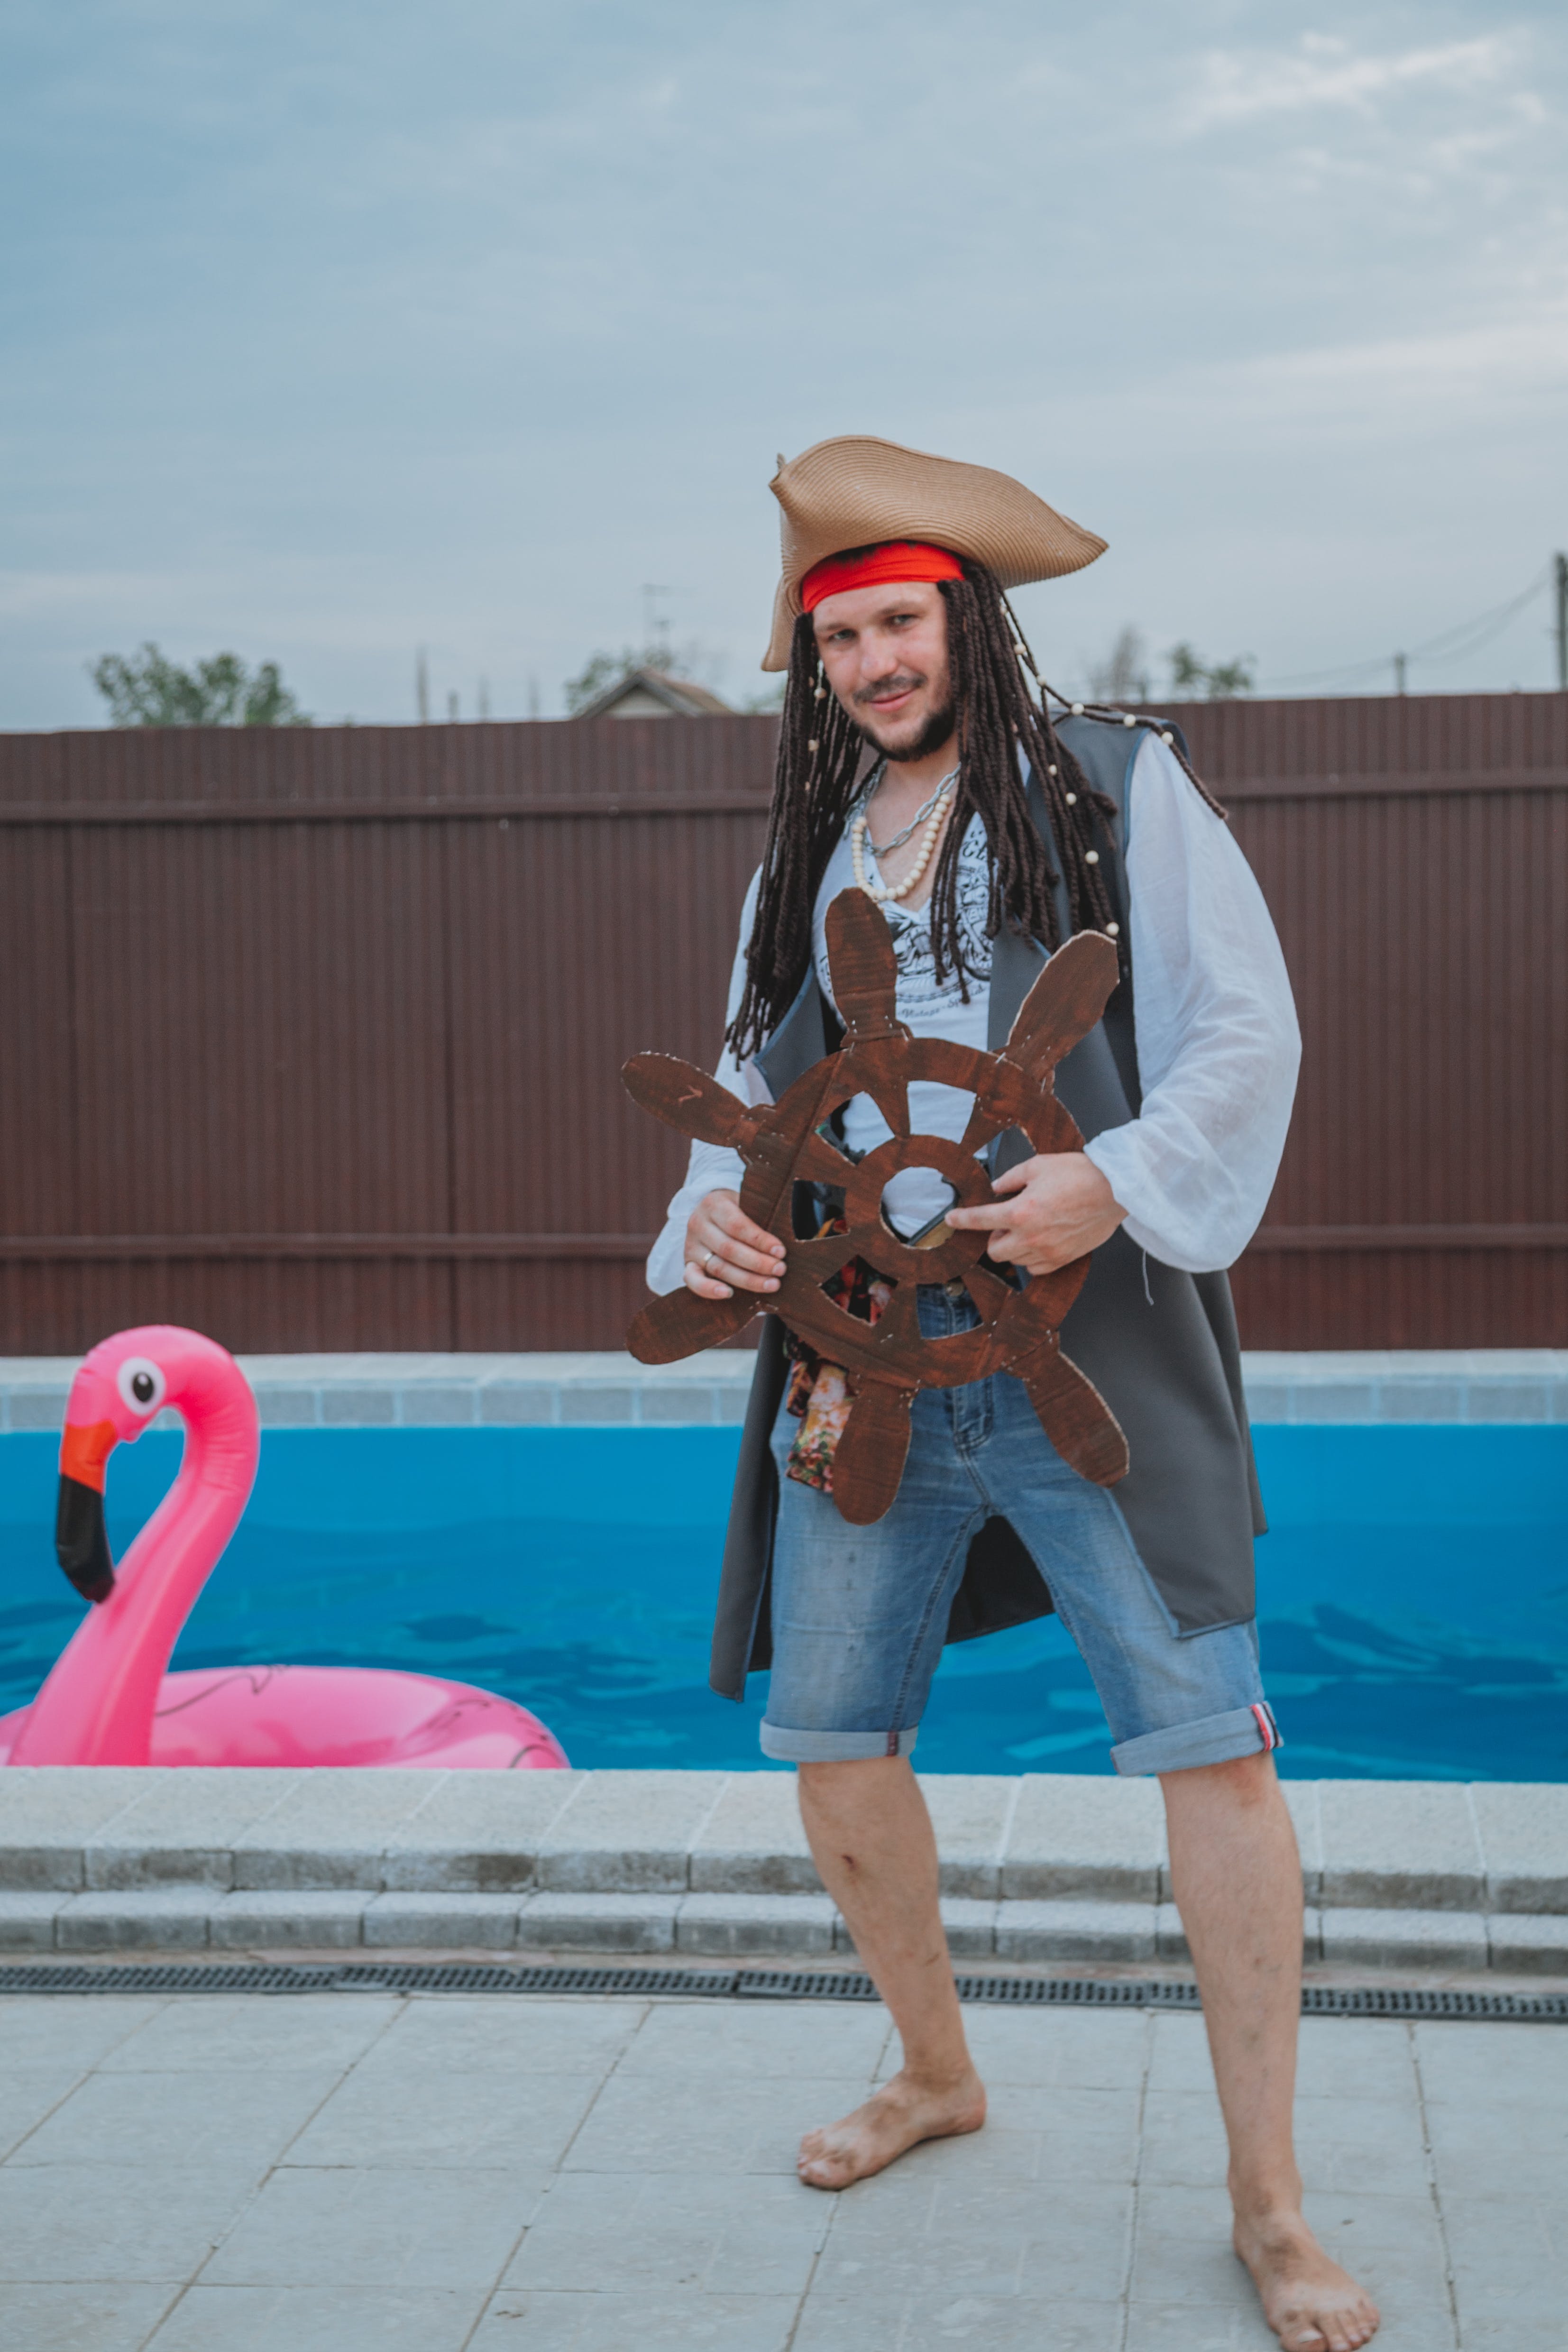 A man in a pirate costume. | Source: Pexels